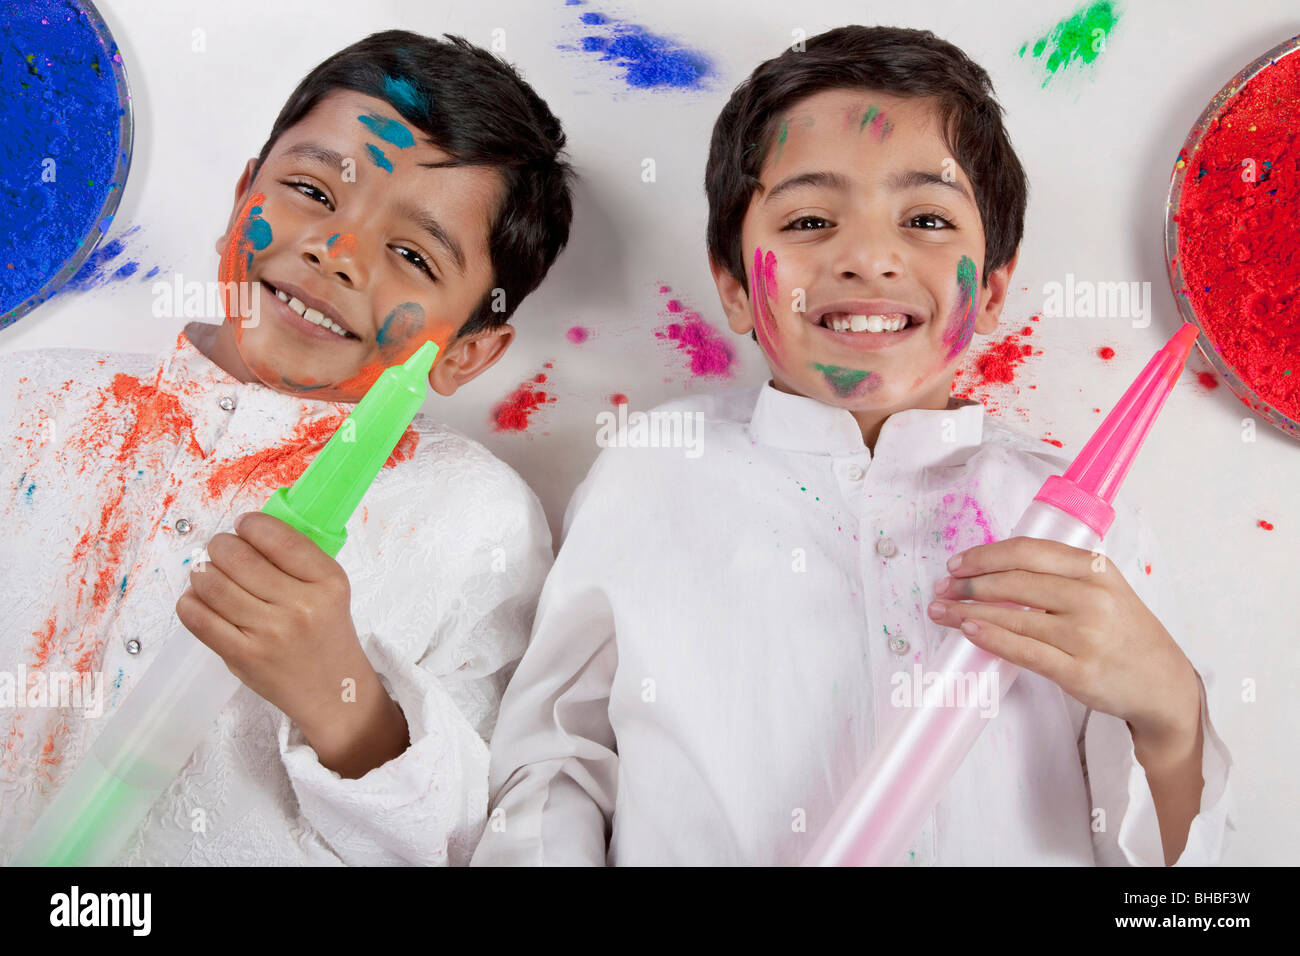 Boys posing with pitchkaris Stock Photo